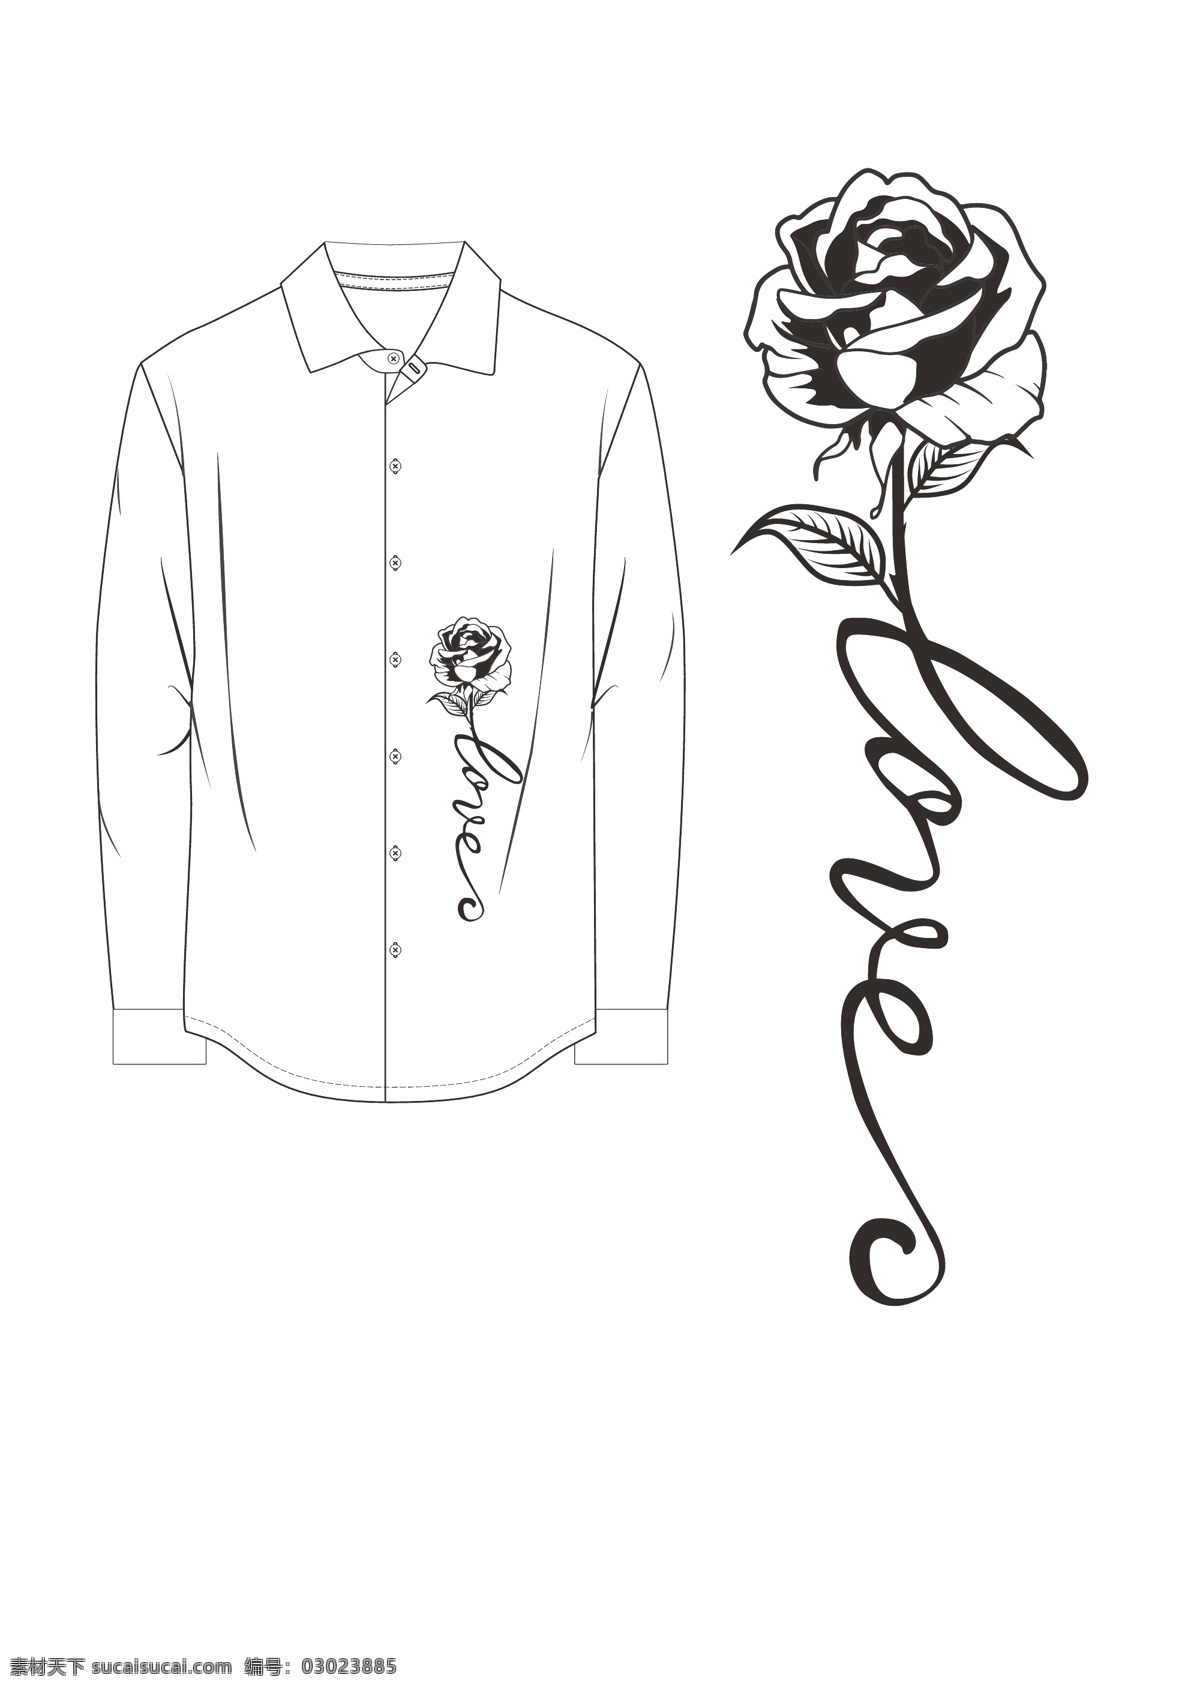 玫瑰衬衫图片 黑色玫瑰 衬衫 ai线稿 手绘玫瑰 纹身玫瑰